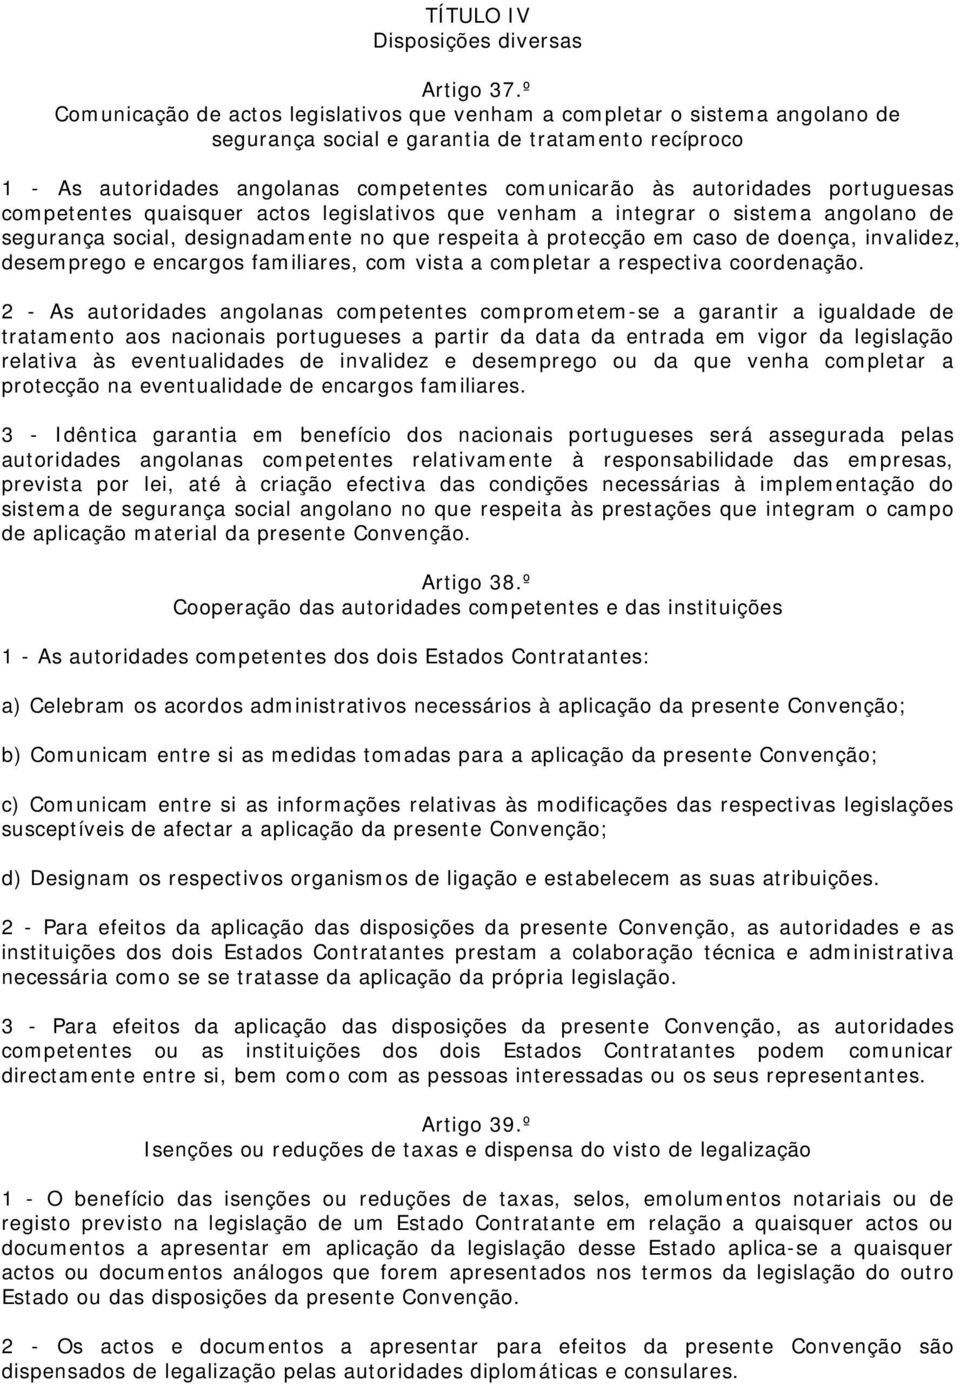 autoridades portuguesas competentes quaisquer actos legislativos que venham a integrar o sistema angolano de segurança social, designadamente no que respeita à protecção em caso de doença, invalidez,